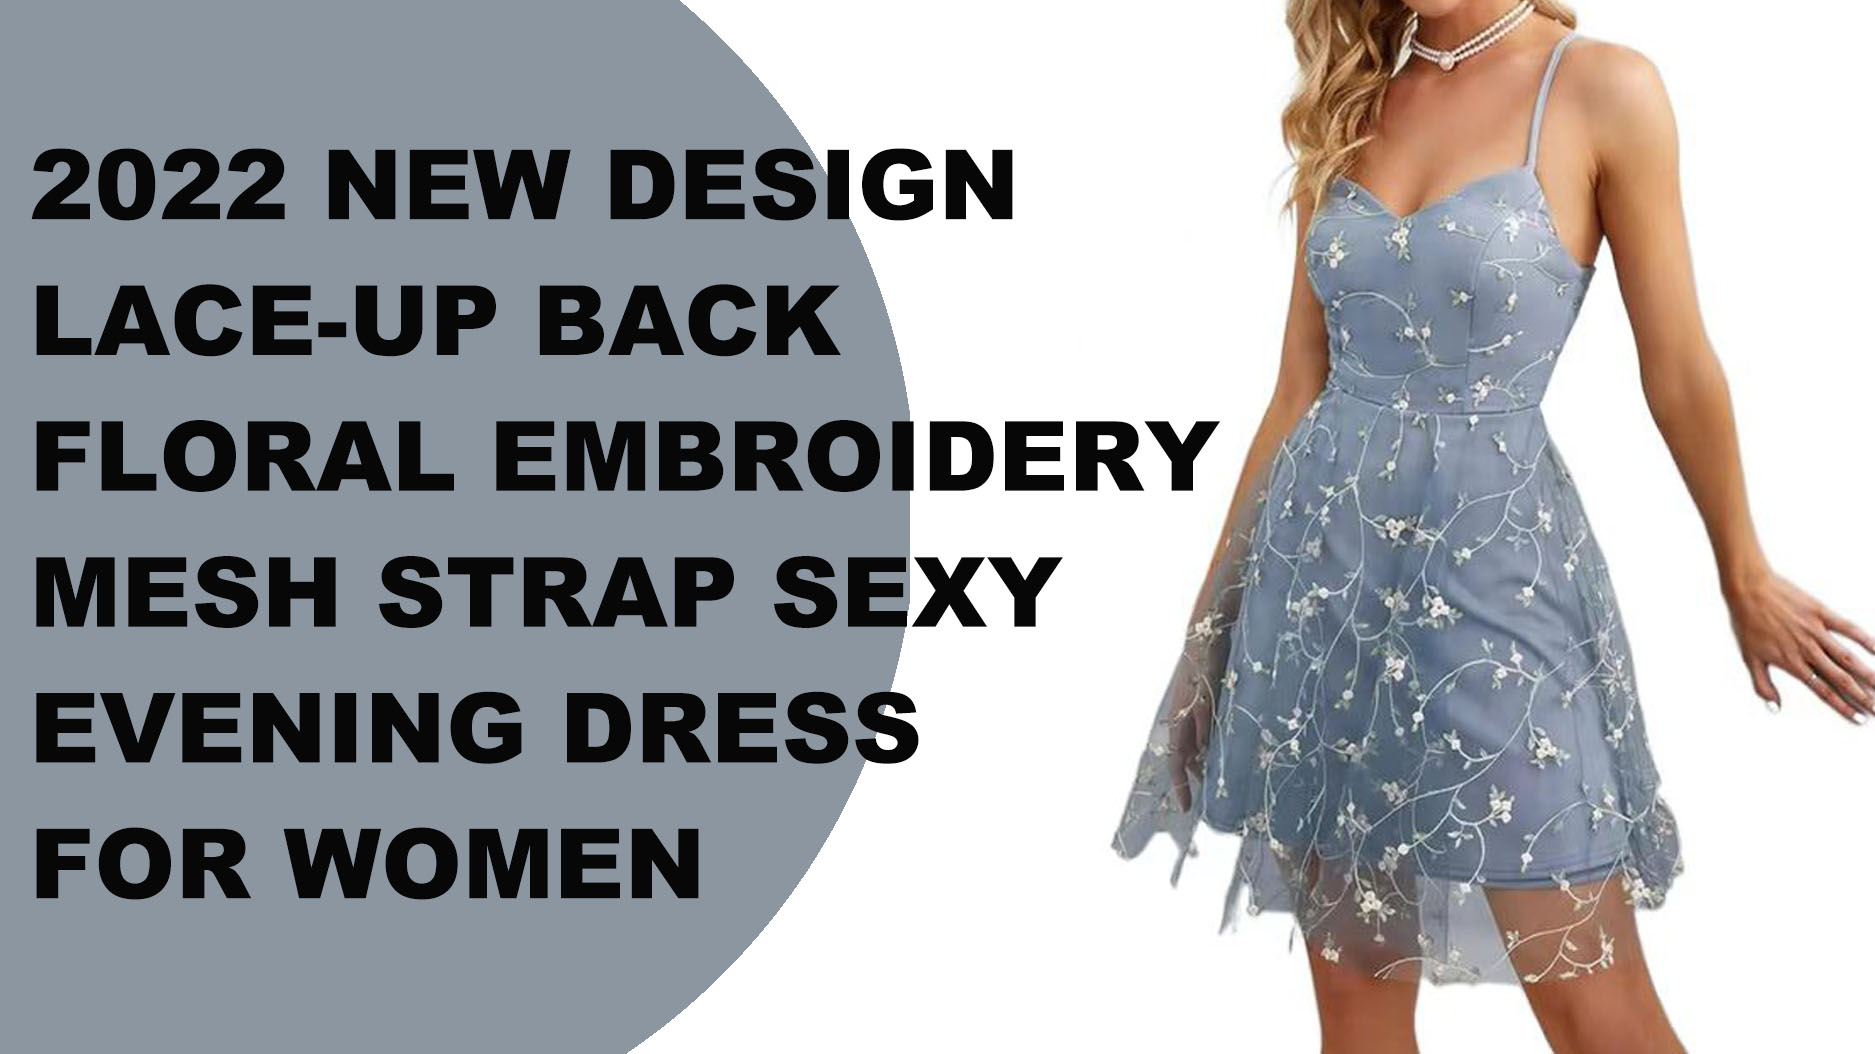 Vestido de noche atractivo de la correa de malla del bordado floral trasero con cordones del nuevo diseño 2022 para las mujeres